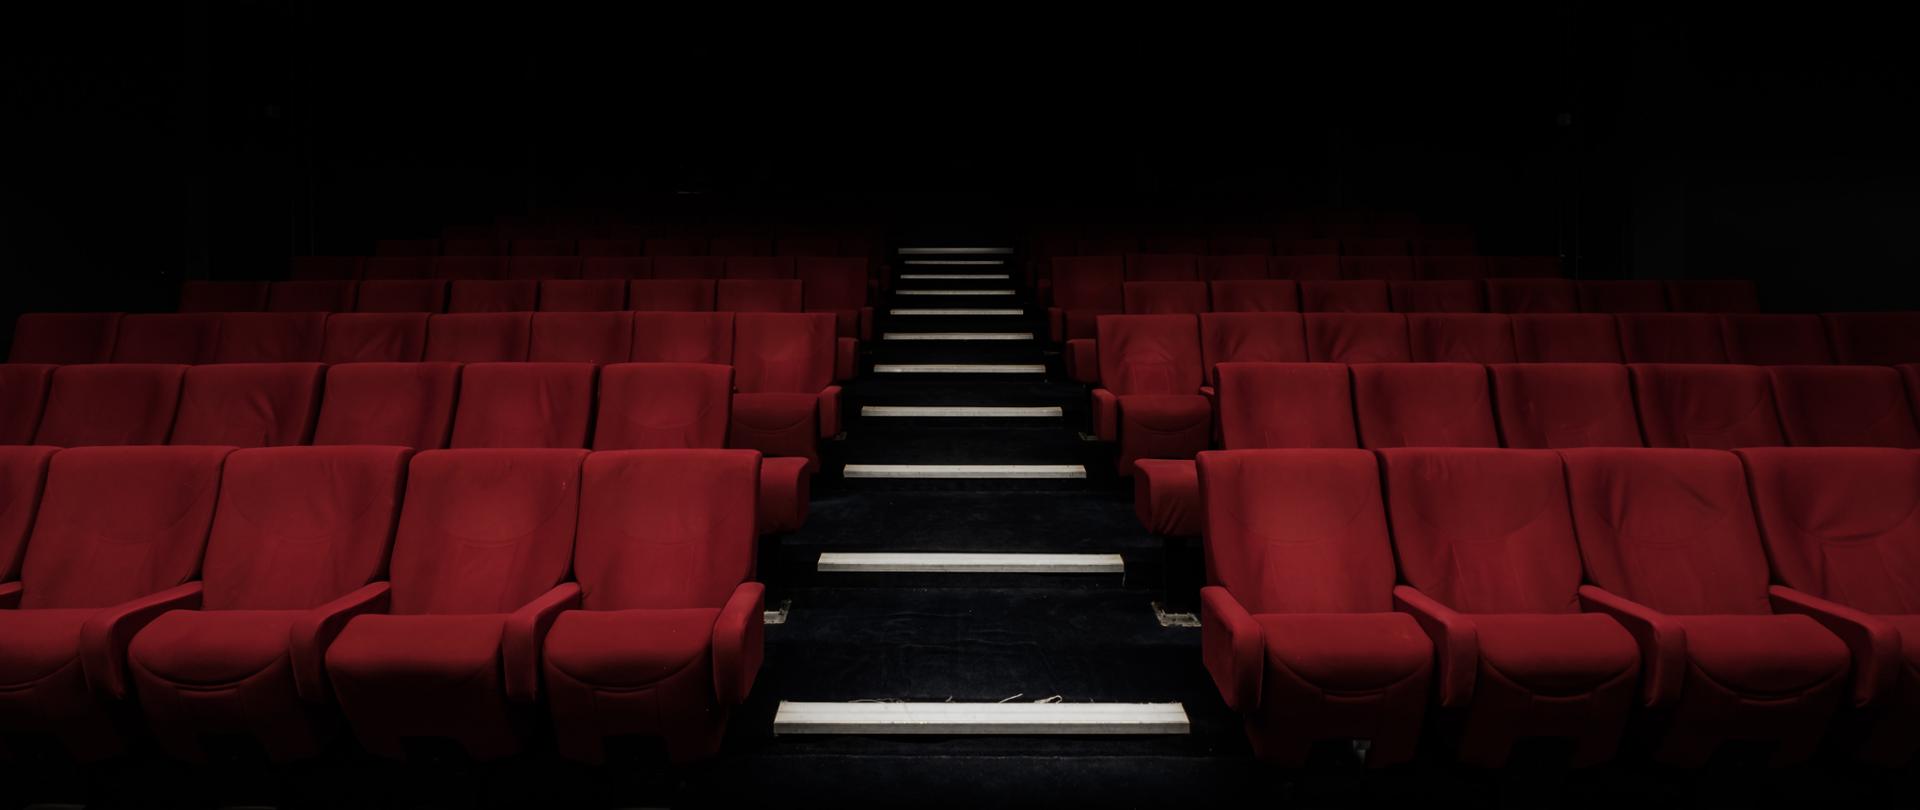 Zaciemniona sala kinowa z bordowymi fotelami i podświetlonymi schodkami po środku sali.